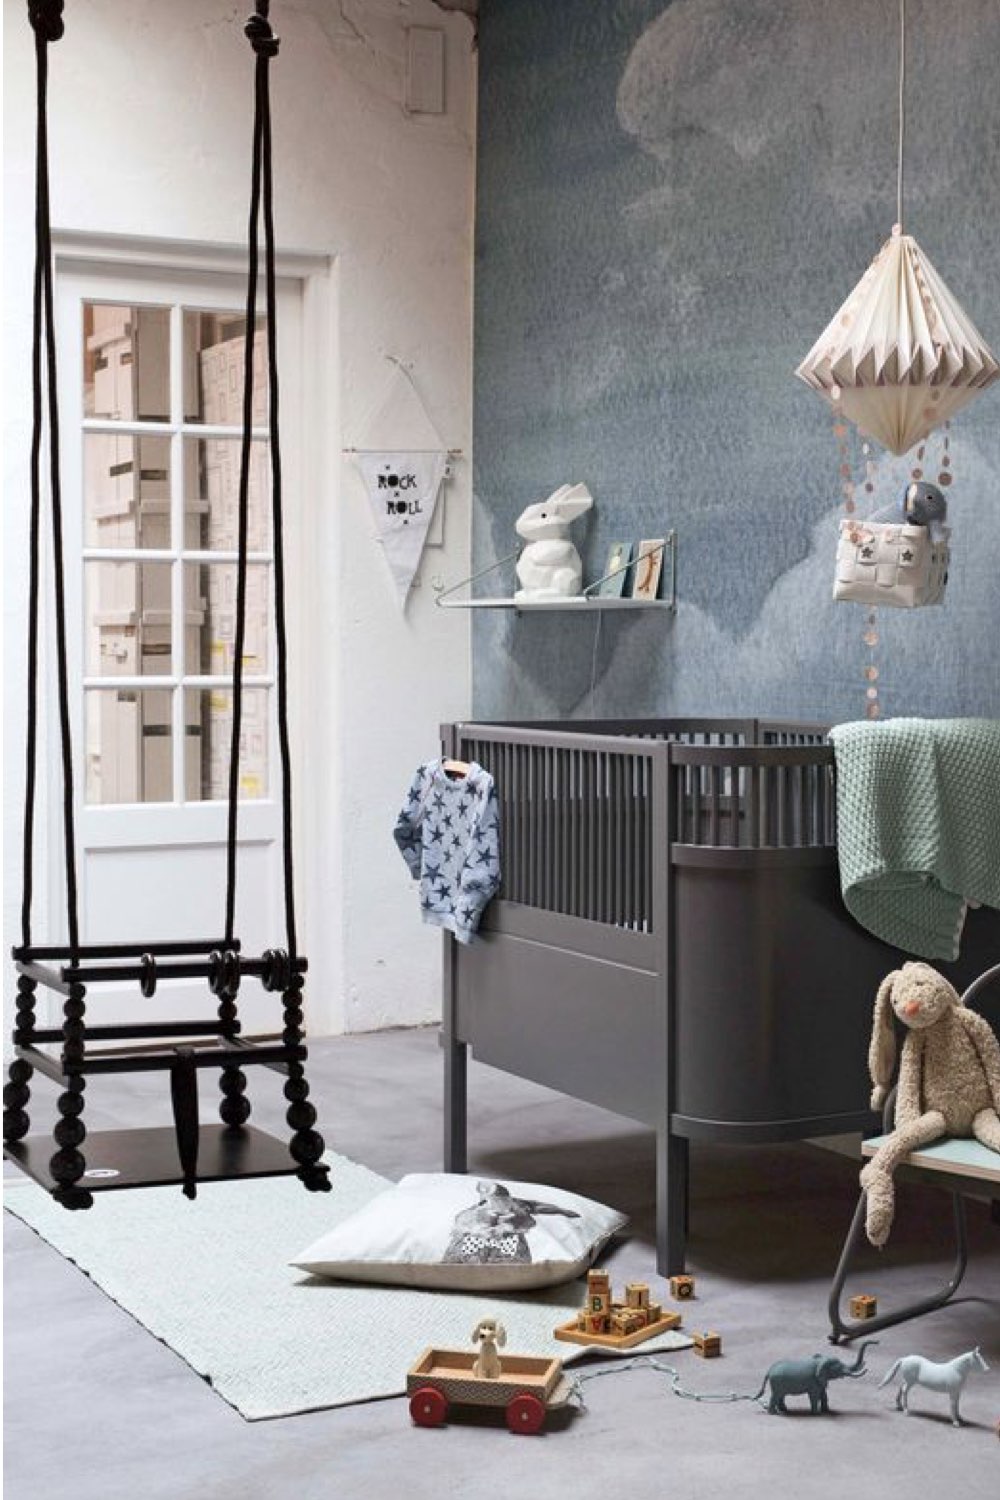 deco chambre bebe garcon moderne bleuet et blanche papier peint berceau gris balançoire suspendue